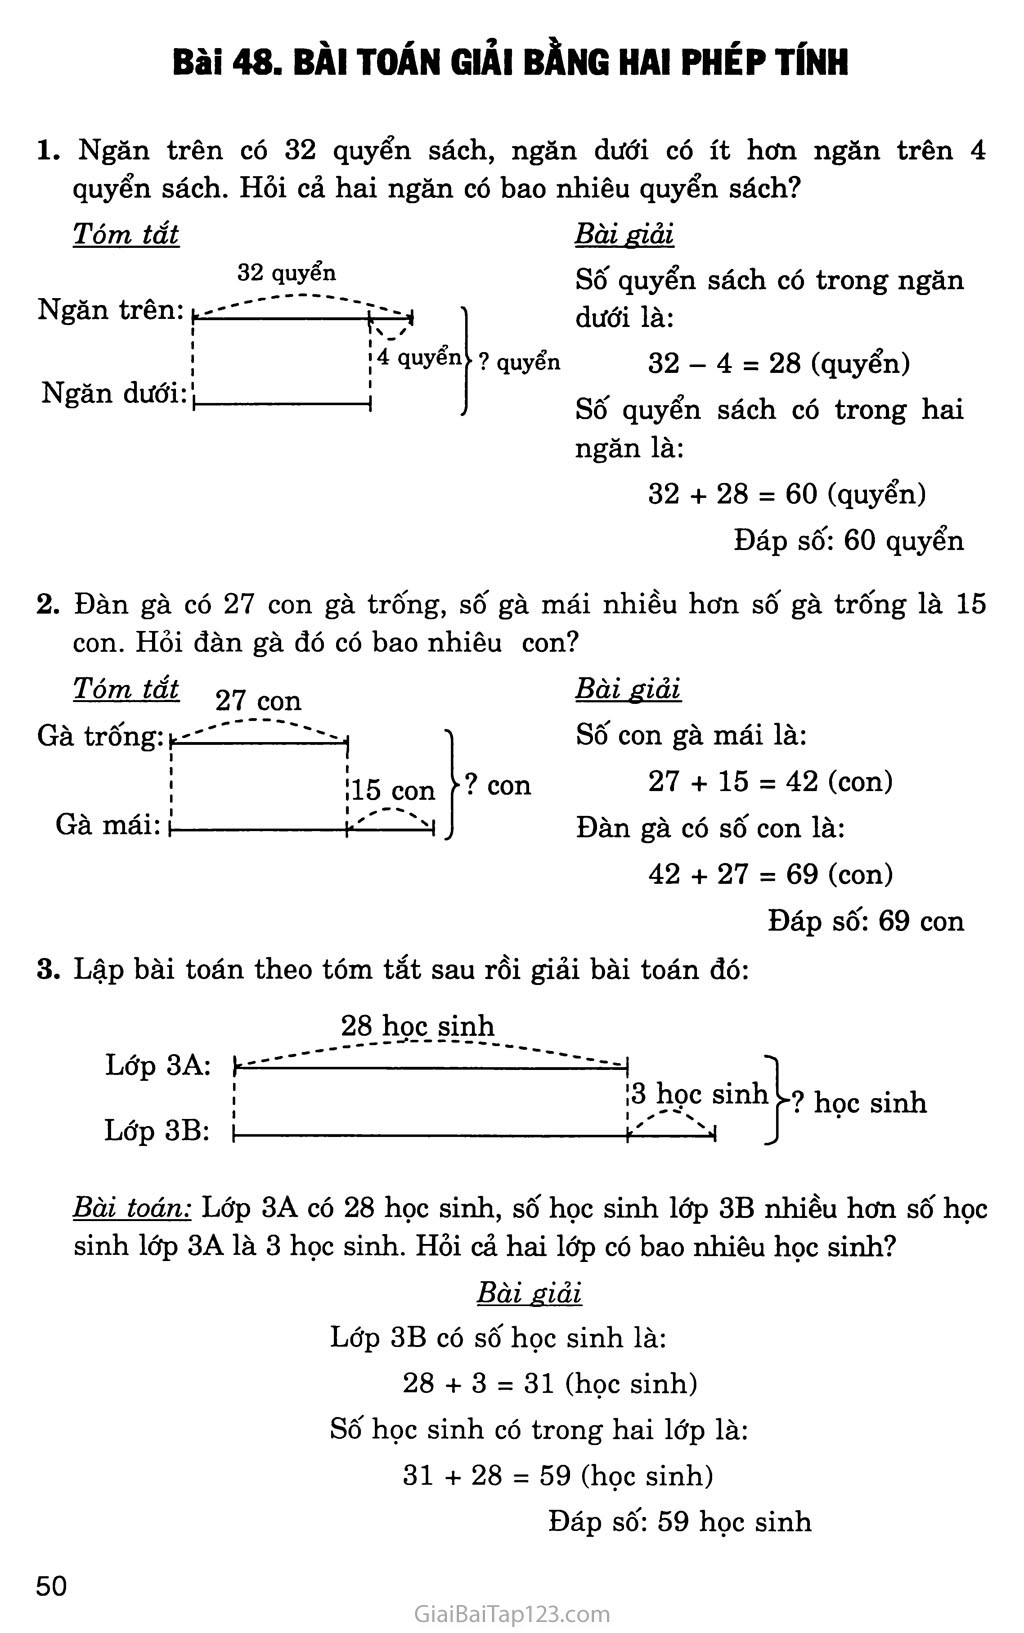 Bài 48: Bài toán giải bằng hai phép tính trang 1